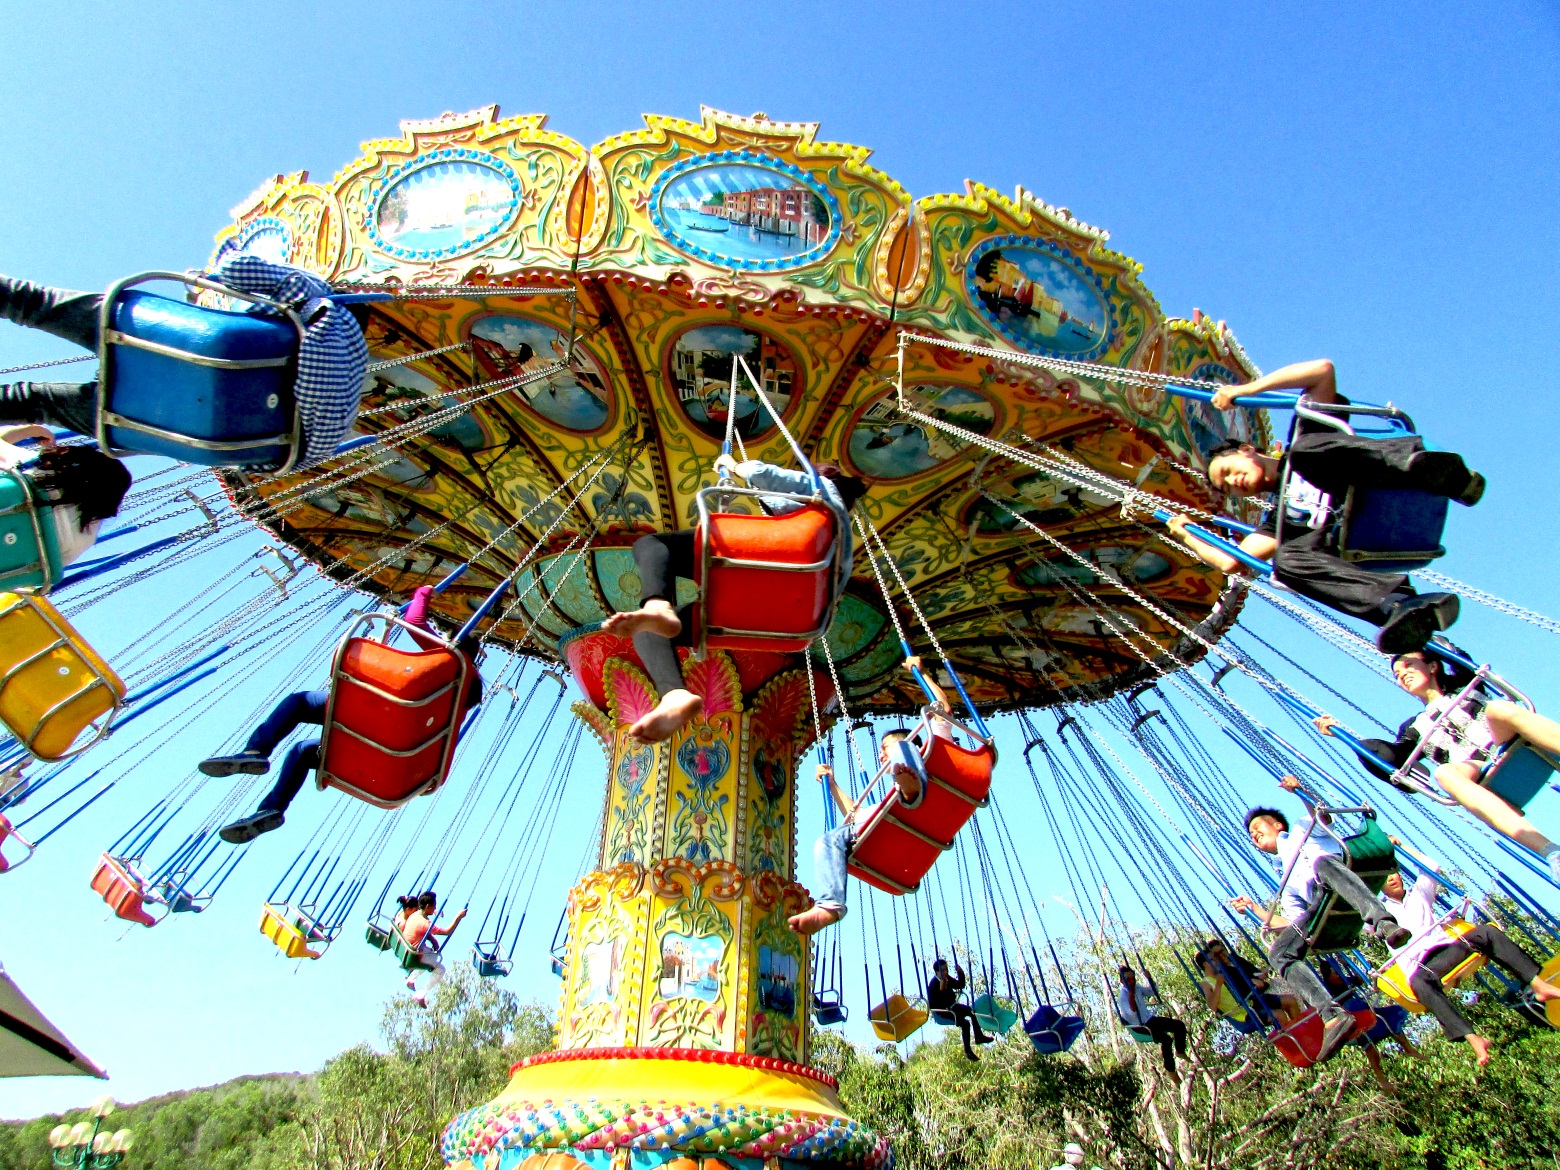 Công viên Thỏ trắng Vũng Tàu nơi có rất nhiều trò vui chơi giải trí dành cho giới trẻ mê cảm giác mạnh